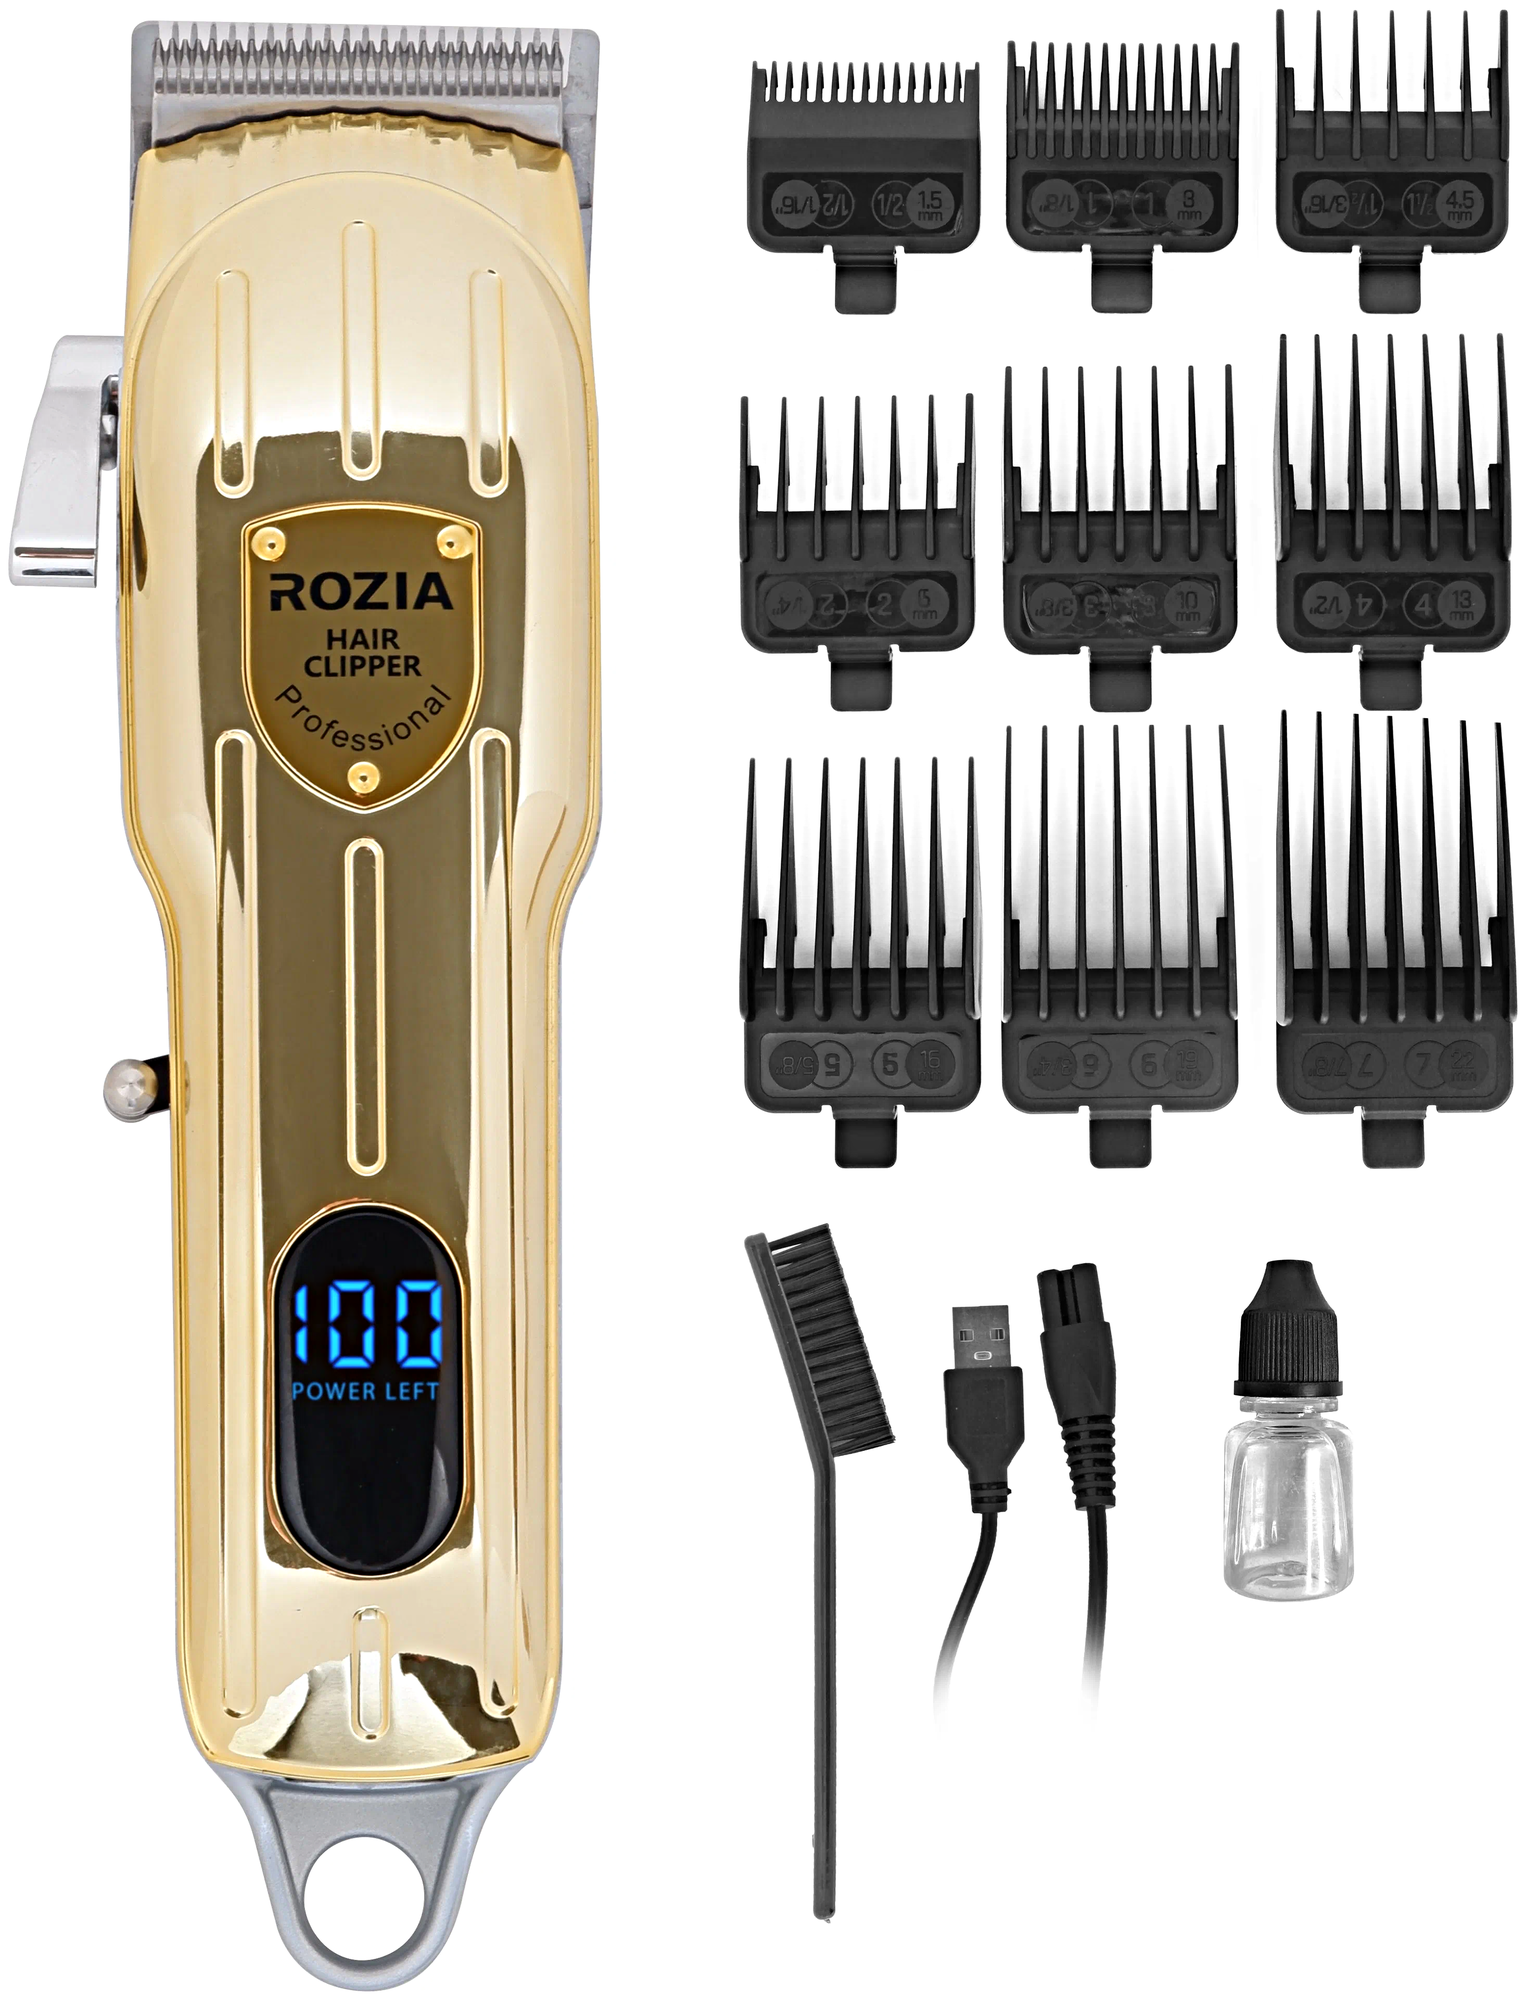 Машинка для стрижки волос HQ-324, Профессиональный триммер для стрижки волос, для бороды, усов, Золотистый